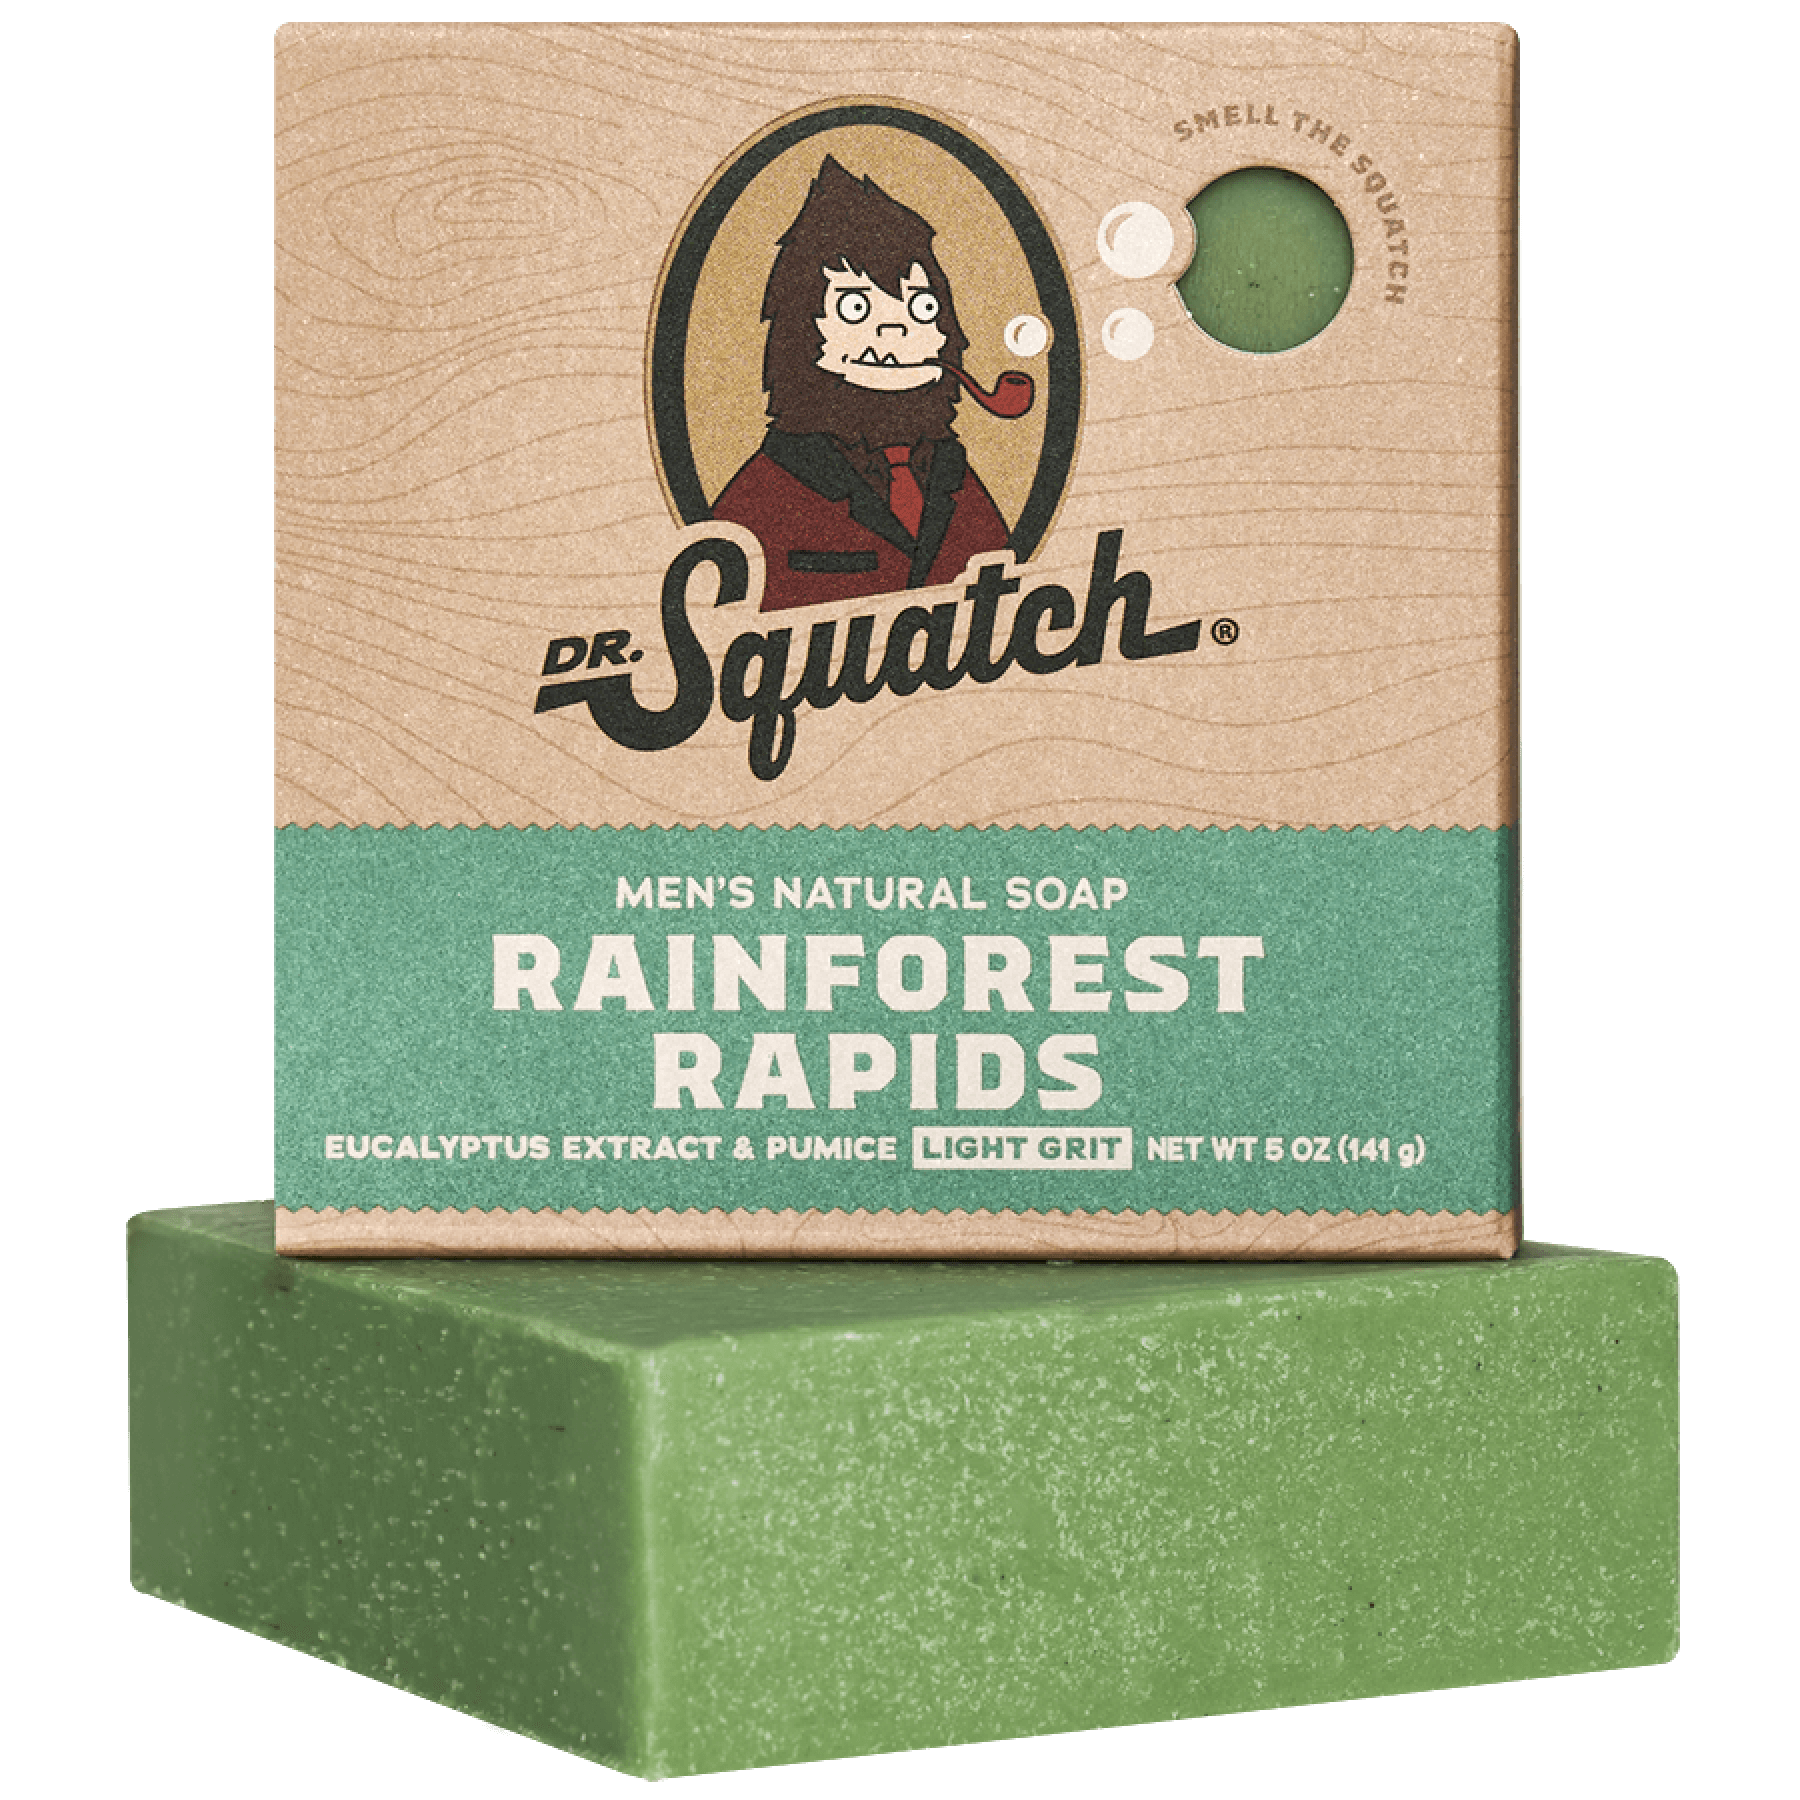 Build-Your-Own Dr. Squatch Soap Kit